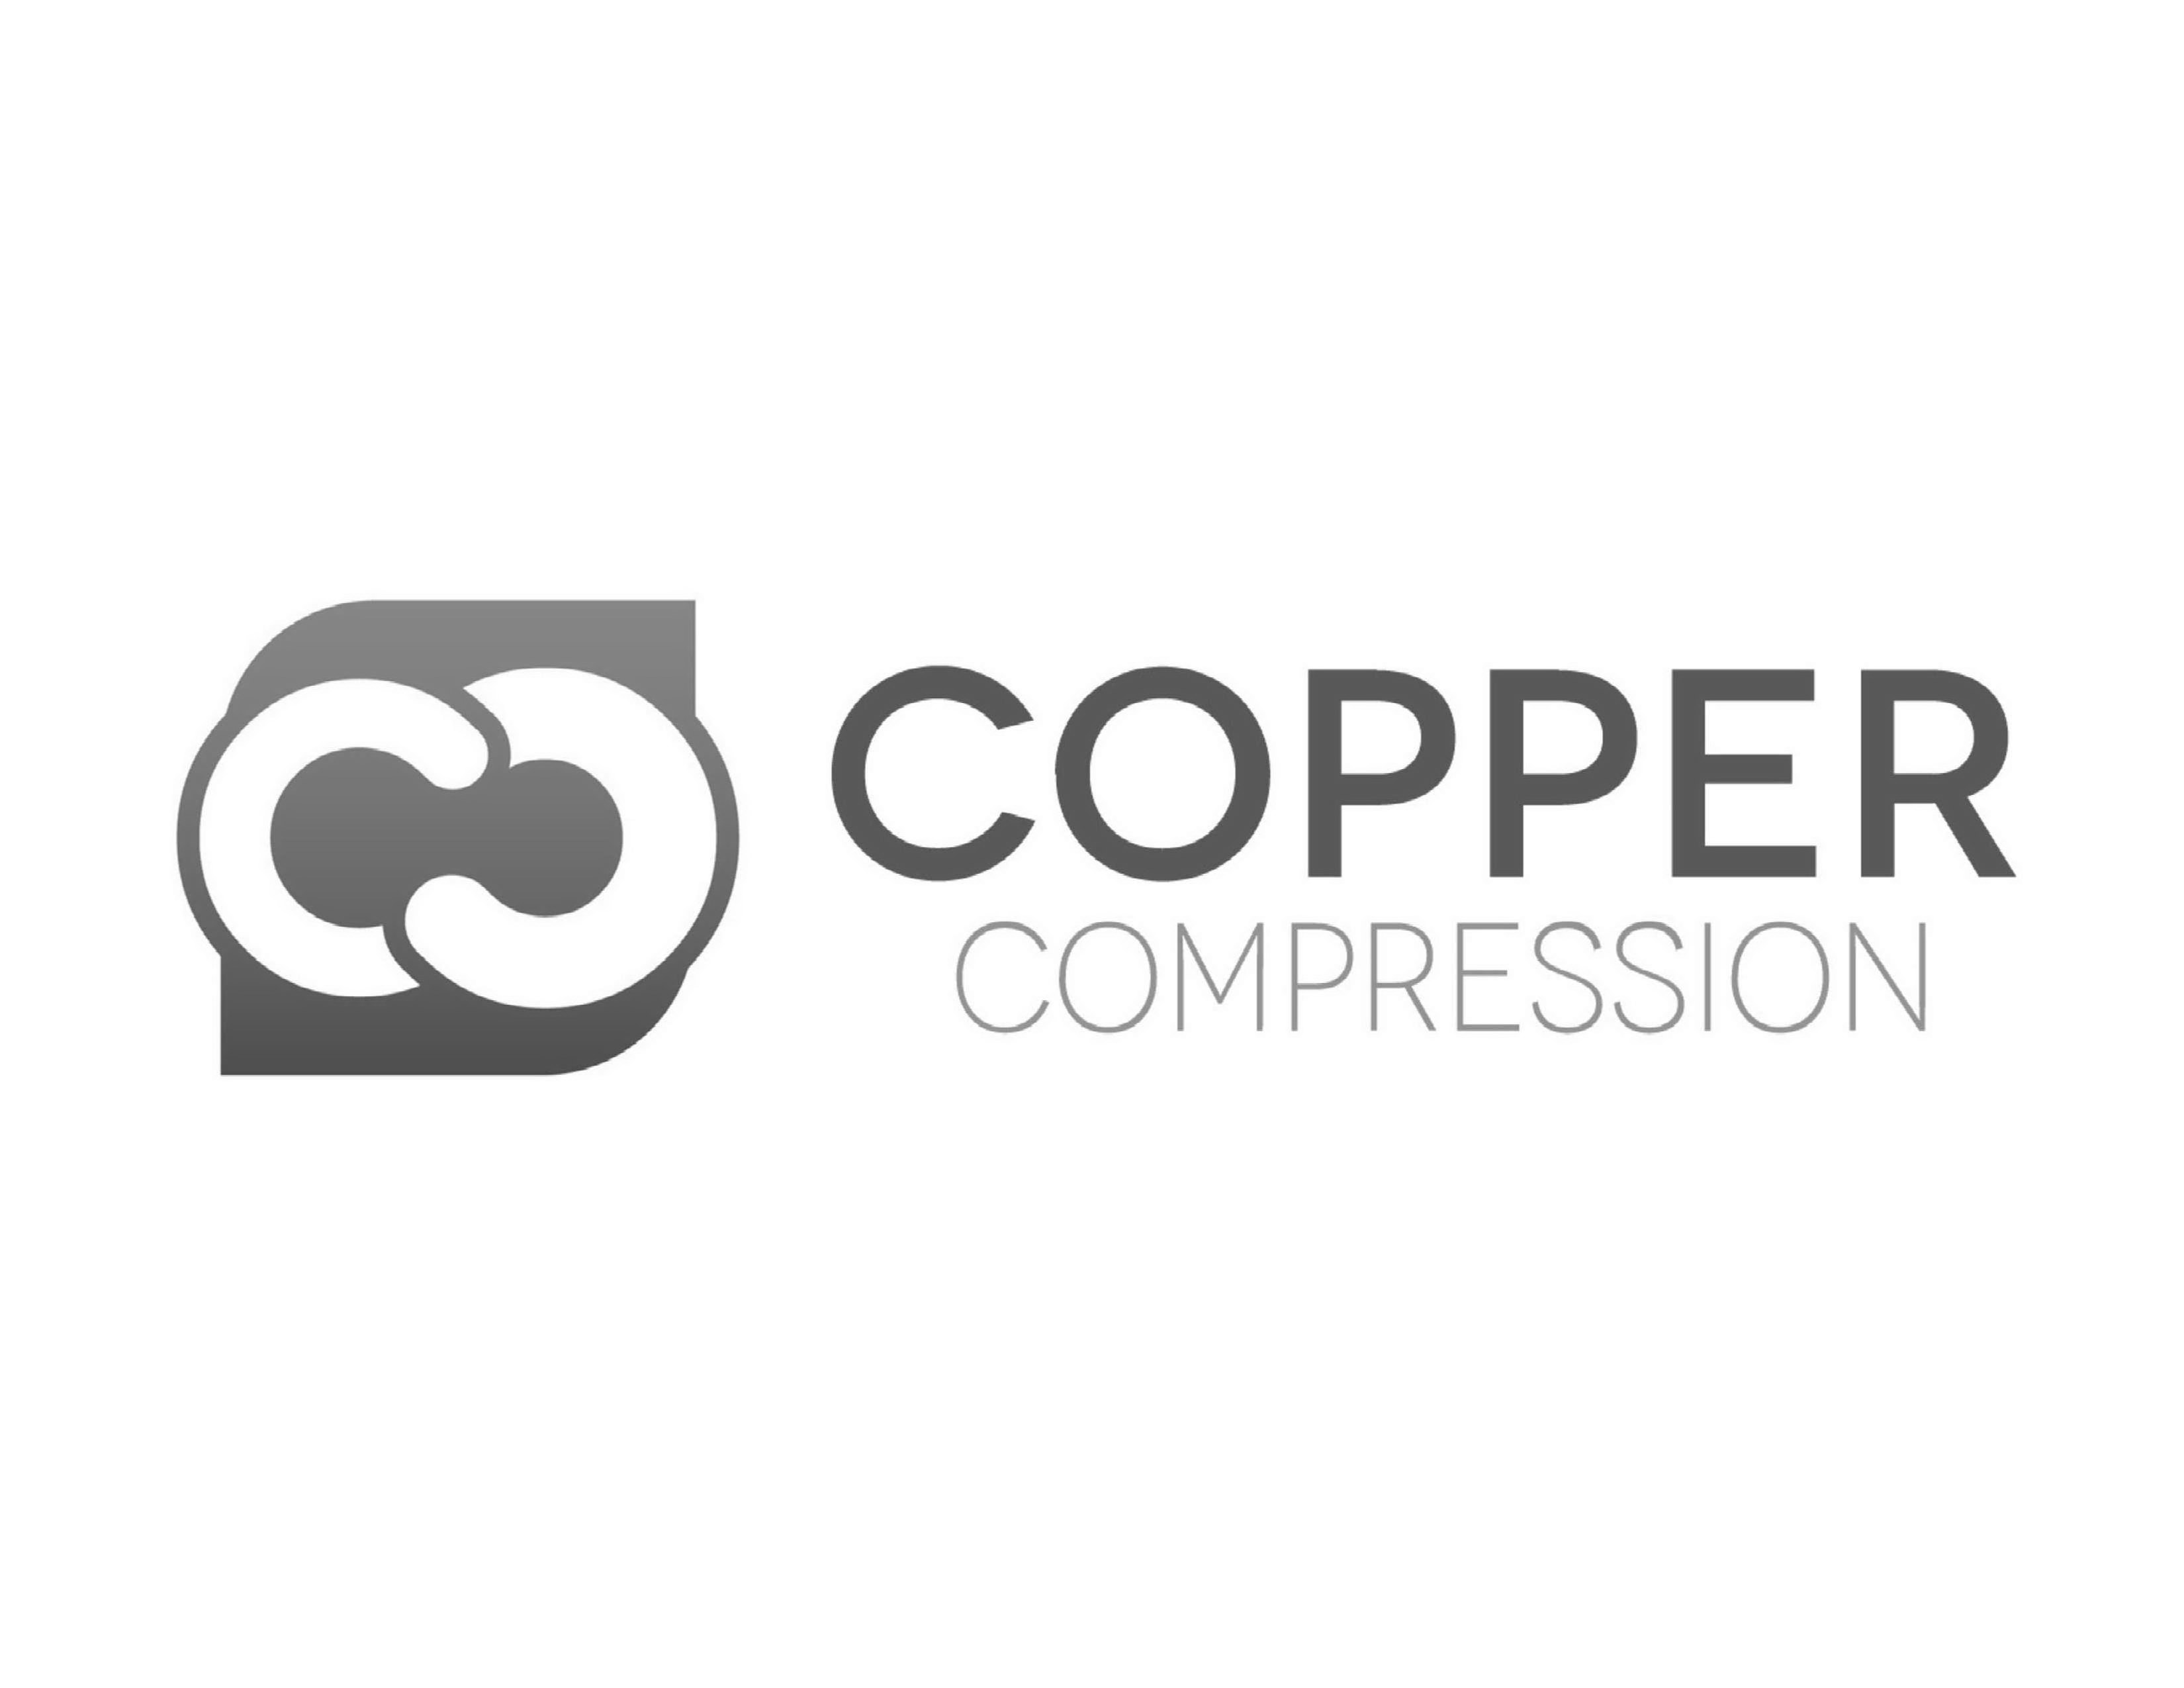 COPPER COMPRESSION